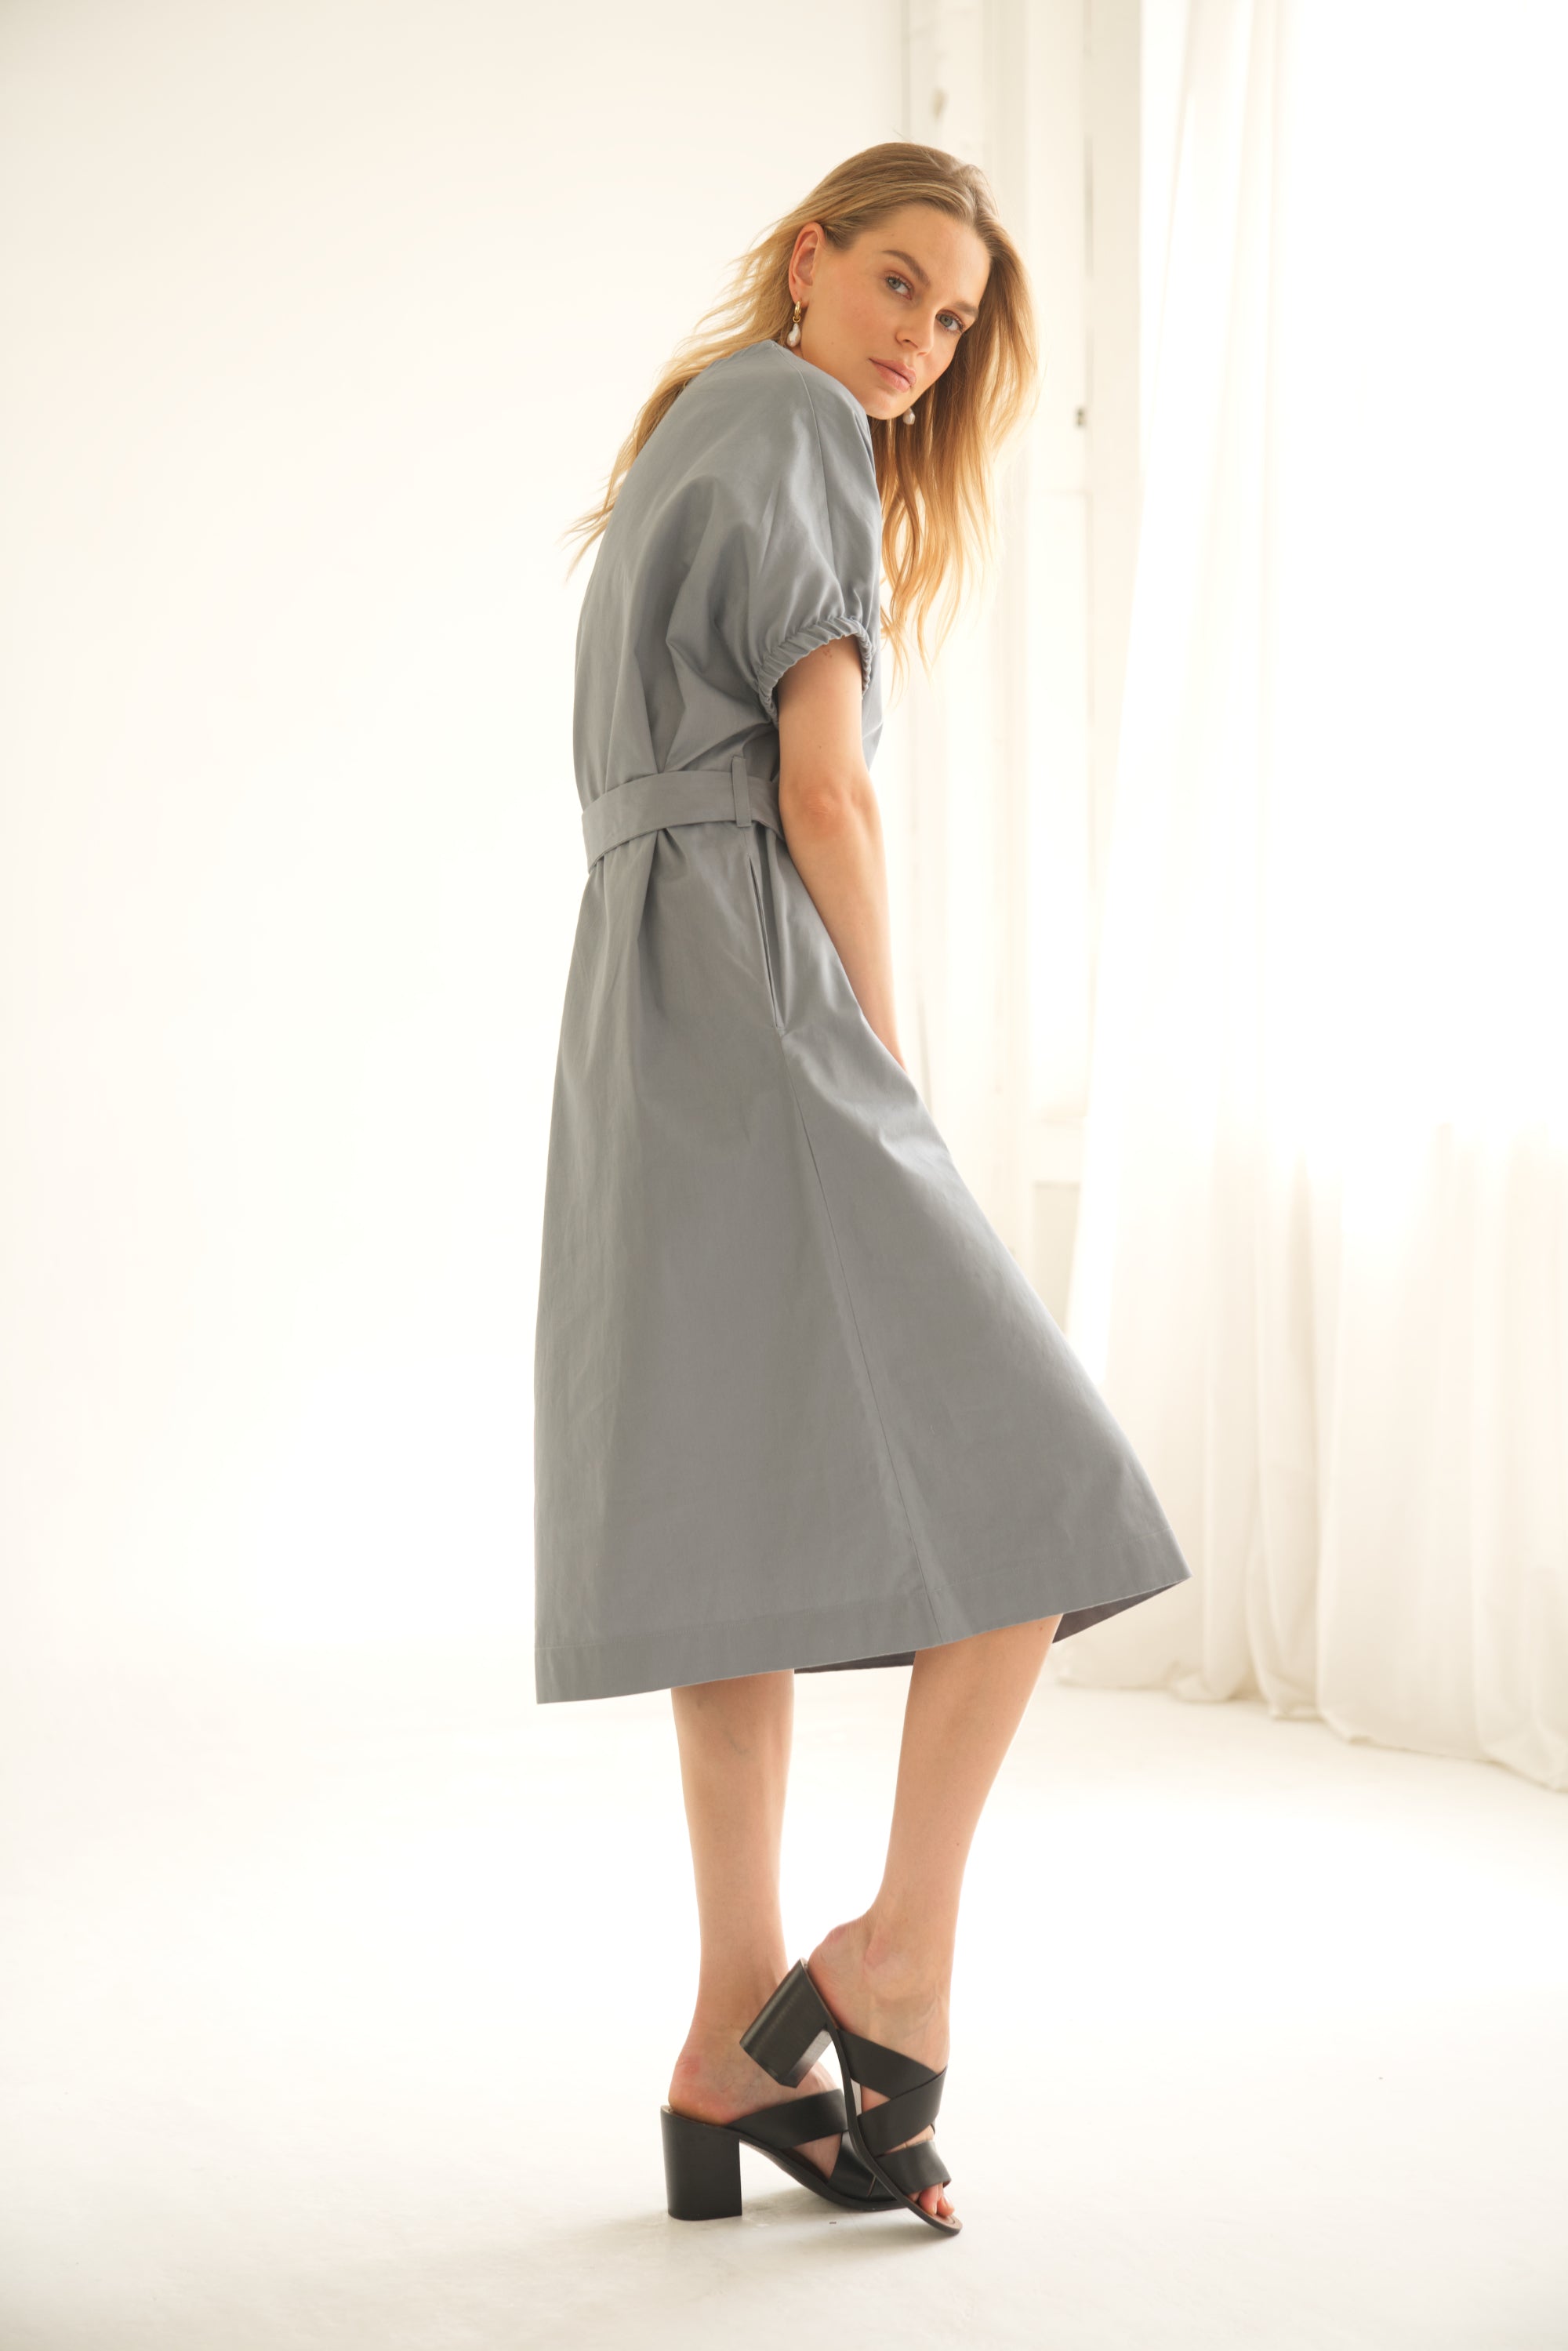 Oversize-Kleid aus Baumwolle in der Farbe blau wird von einem blonden Model getragen. Sie zeigt sich von der Seite.